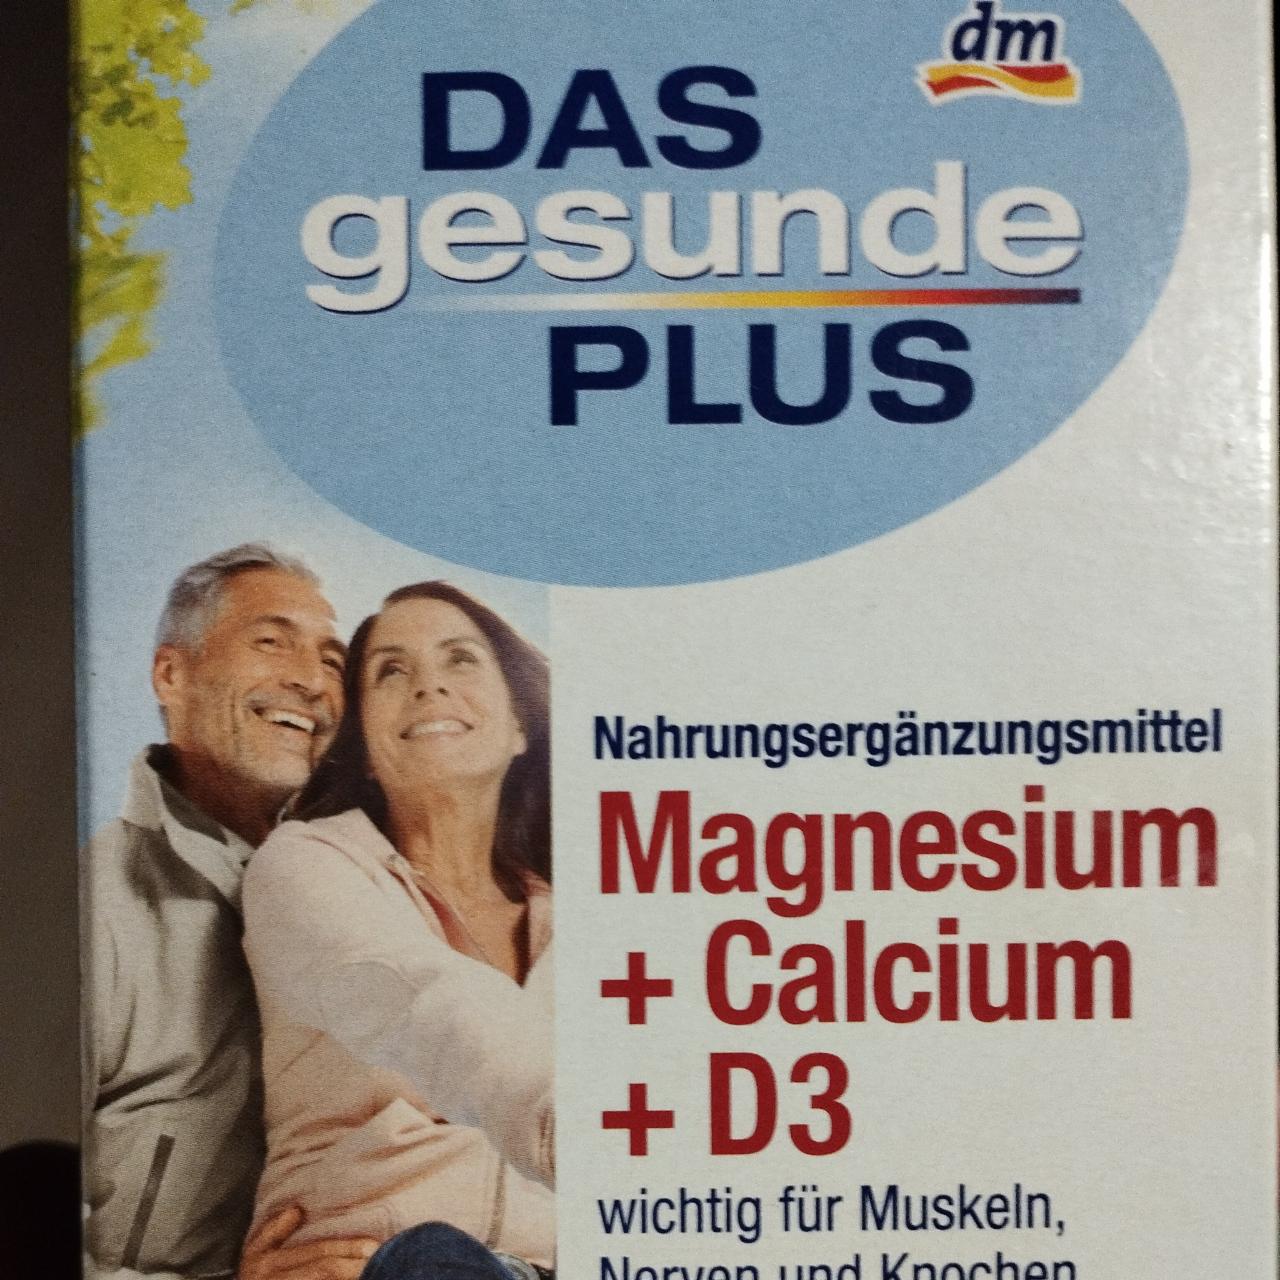 Fotografie - Magnesium + Calcium + D3 DAS gesunde PLUS